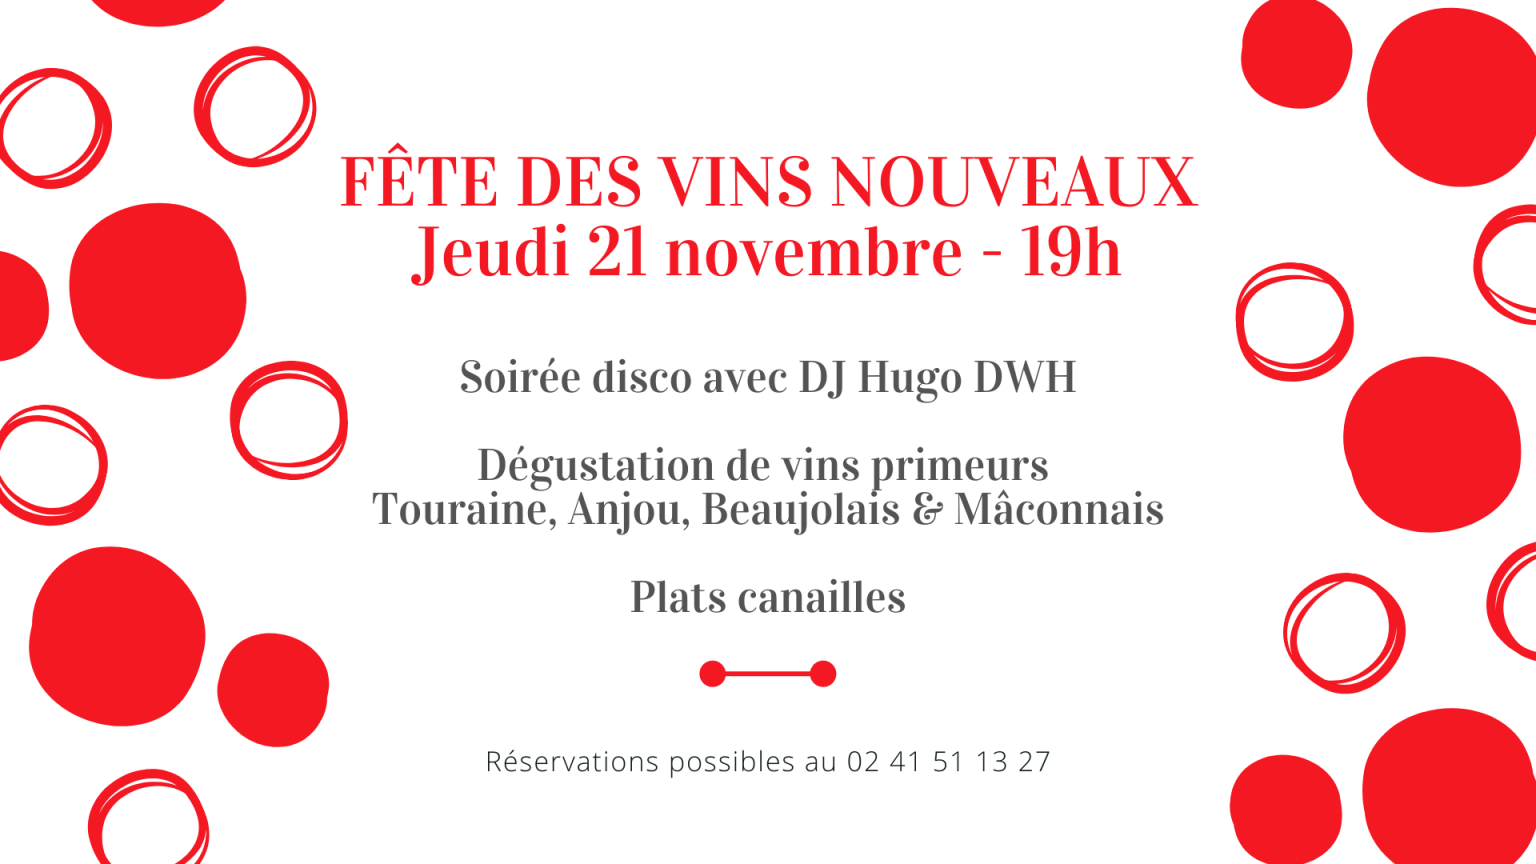 Fête des vins nouveaux 2019 - 21 novembre au Bistrot de la Place